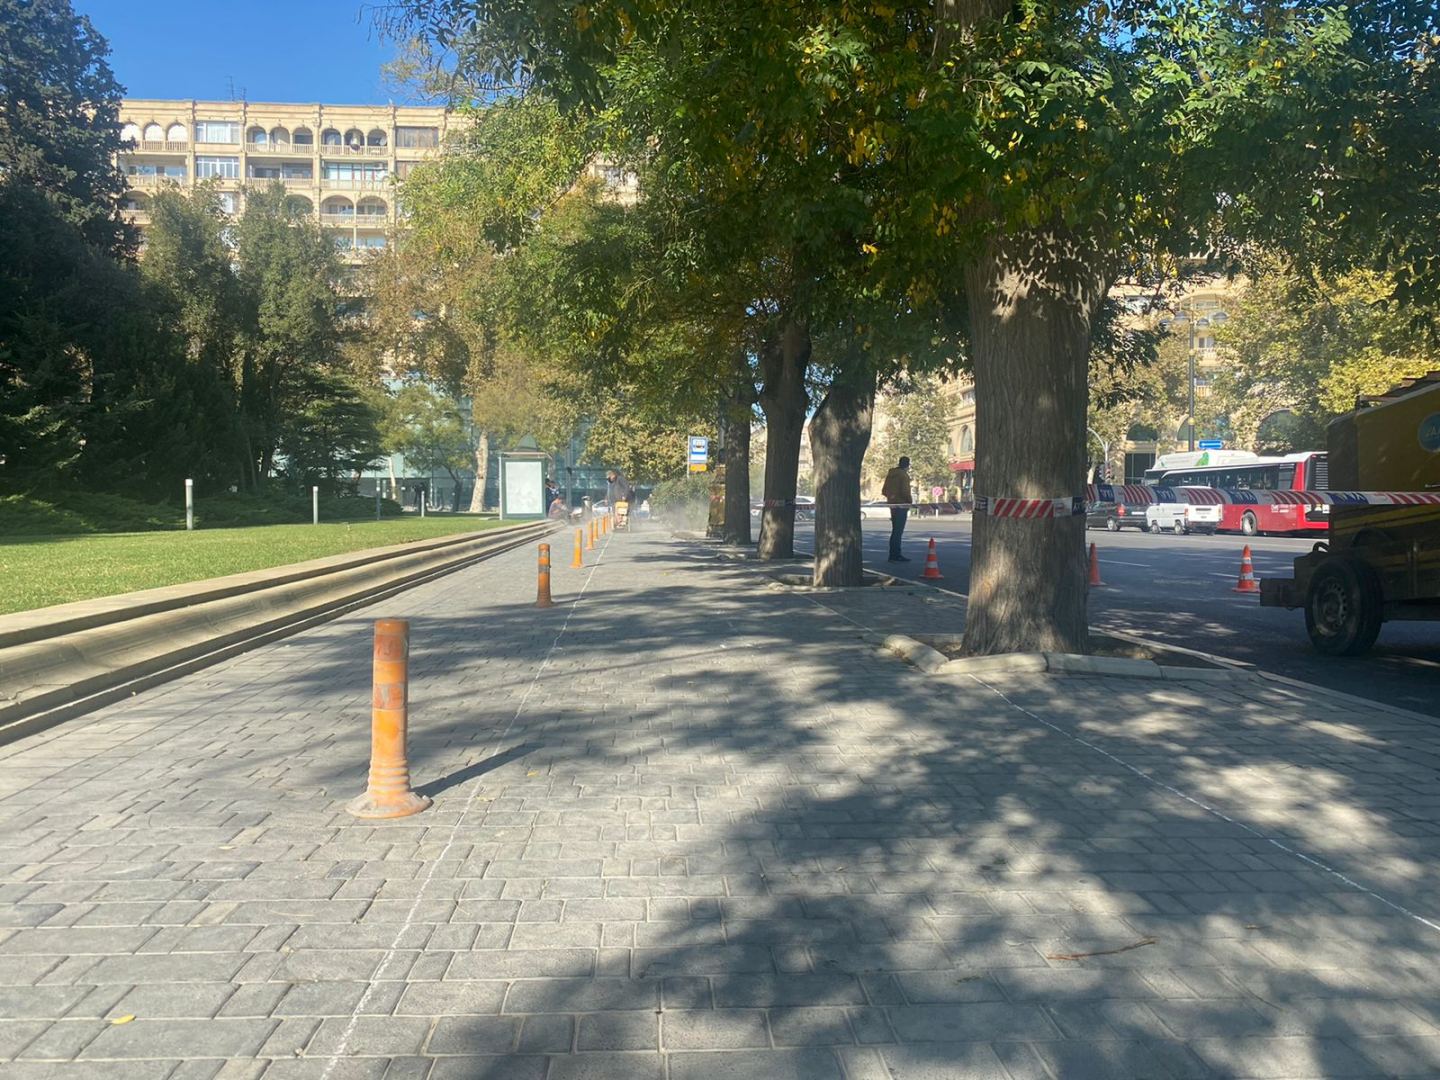 На центральных улицах Баку прокладываются велодорожки (ФОТО)